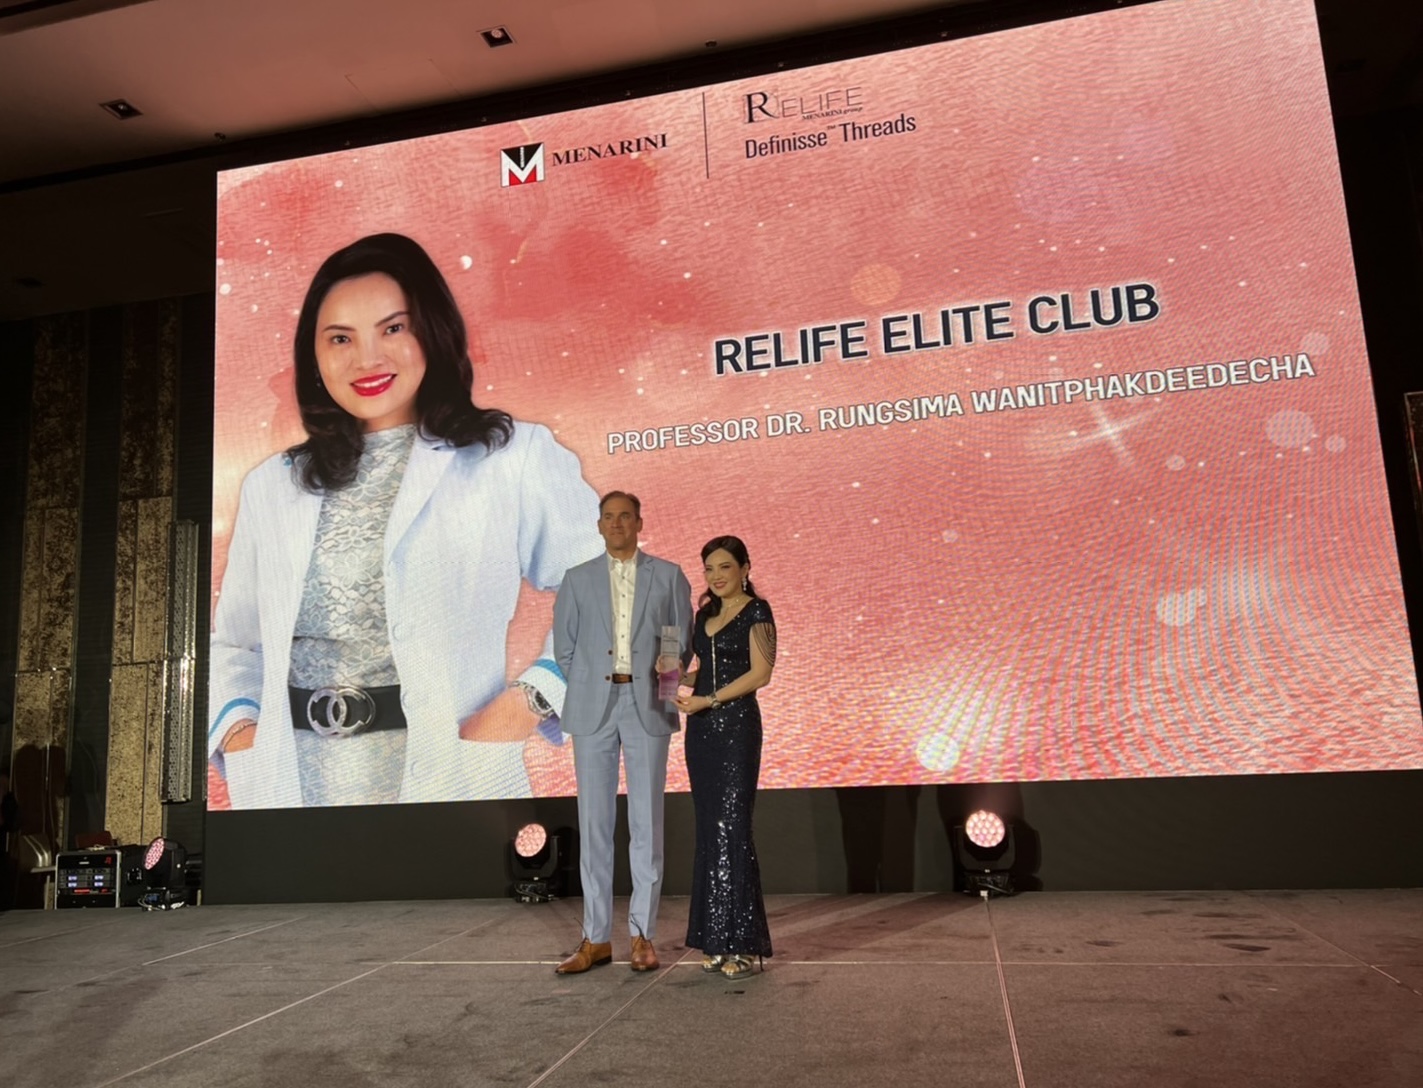 ศ. พญ.รังสิมา วณิชภักดีเดชา ได้รับรางวัล 2020 RELIFE Elite Club : MOMENT OF LIFT จากการร่วมวิจัย และมียอดใช้สูงสุด